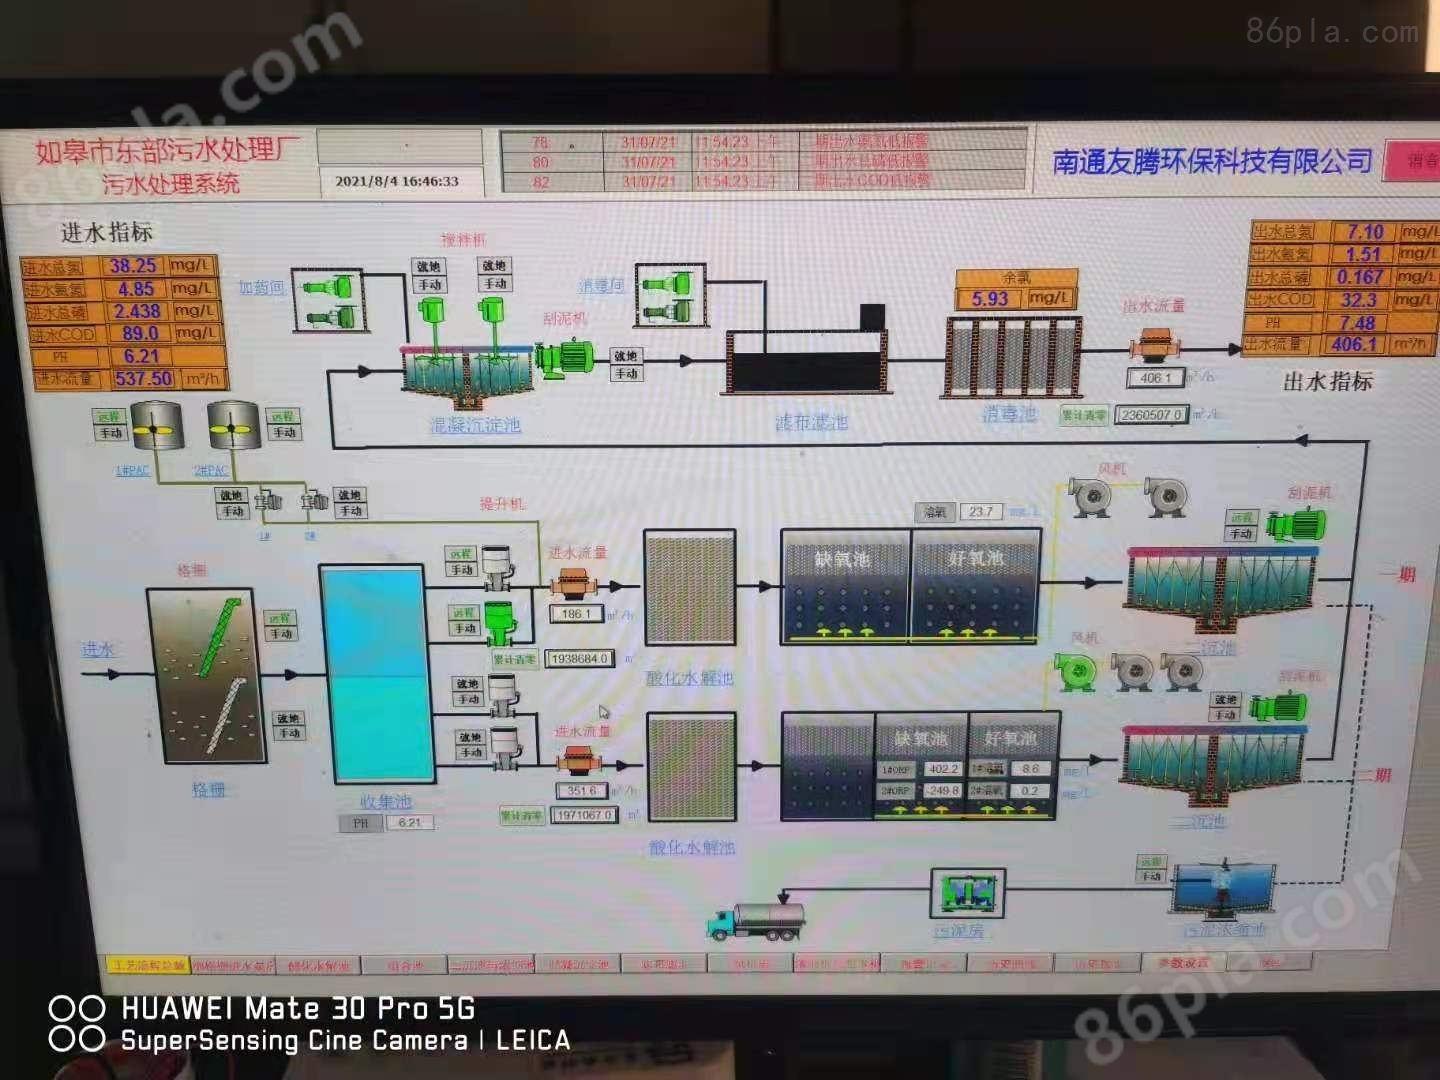 山东污水处理厂自动化控制系统 plc控制